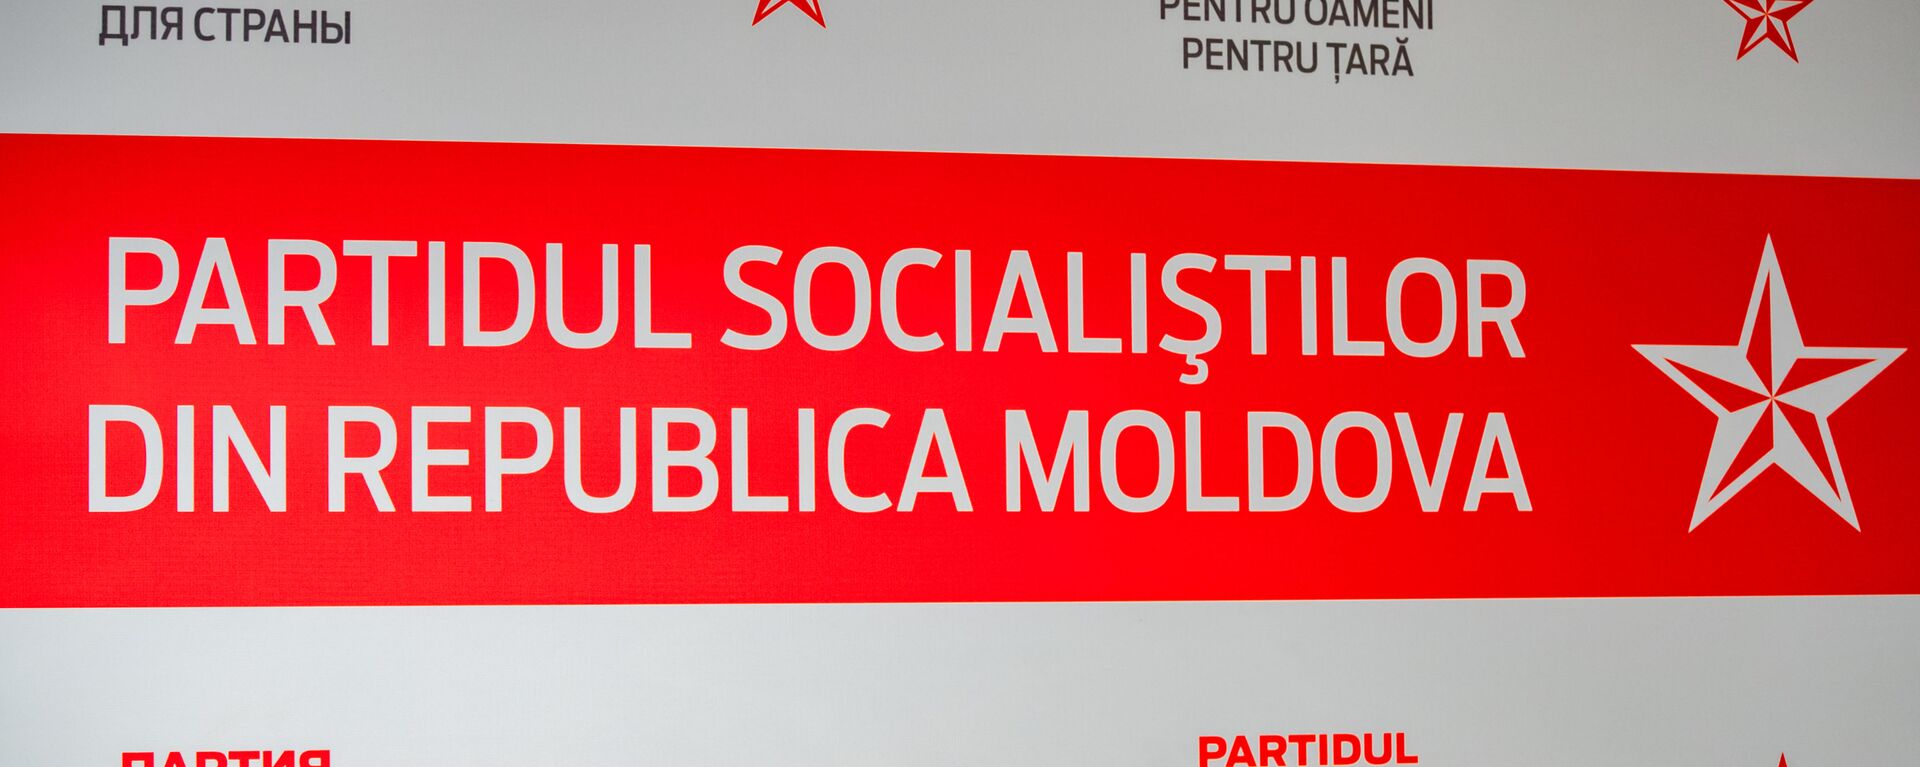 Partidul Socialiștilor din Republica Moldova - Sputnik Moldova, 1920, 27.04.2021